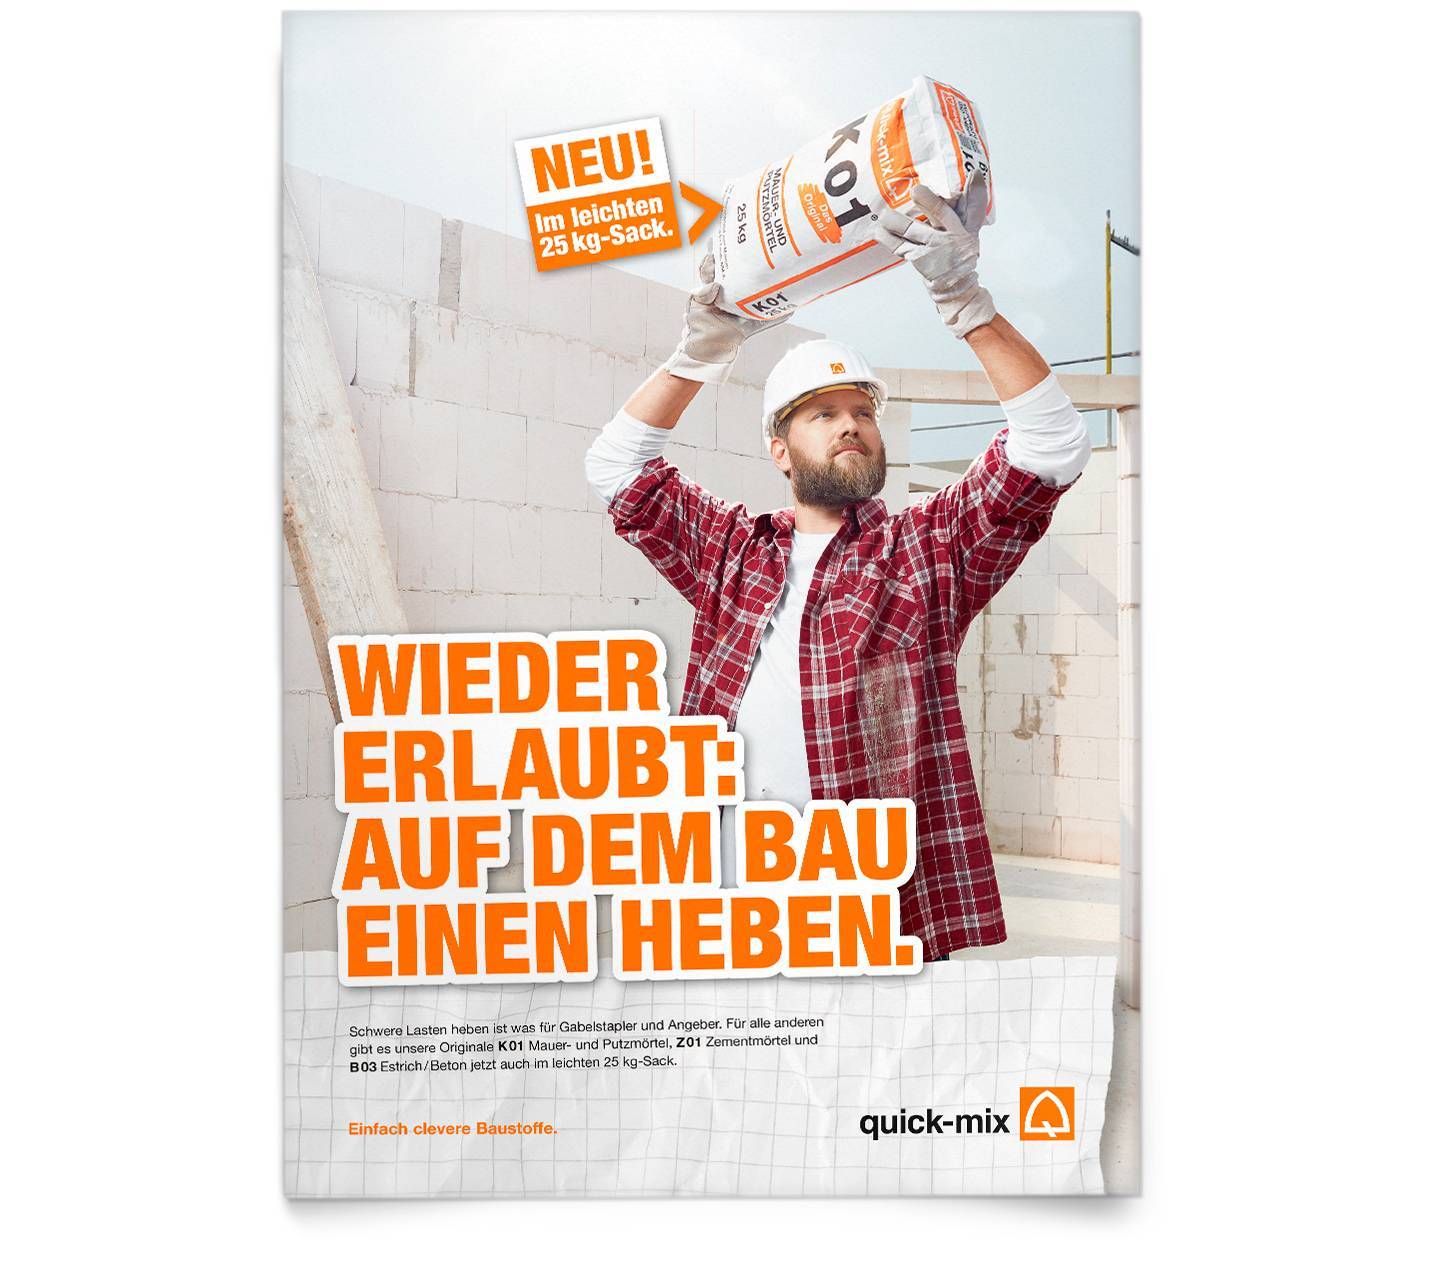 Anzeigenmotiv quickmix 25kg Sack. Bauarbeiter auf Baustelle hält Zementsack über seinem Kopf. Headline: Wieder erlaubt: Auf dem Bau einen heben!